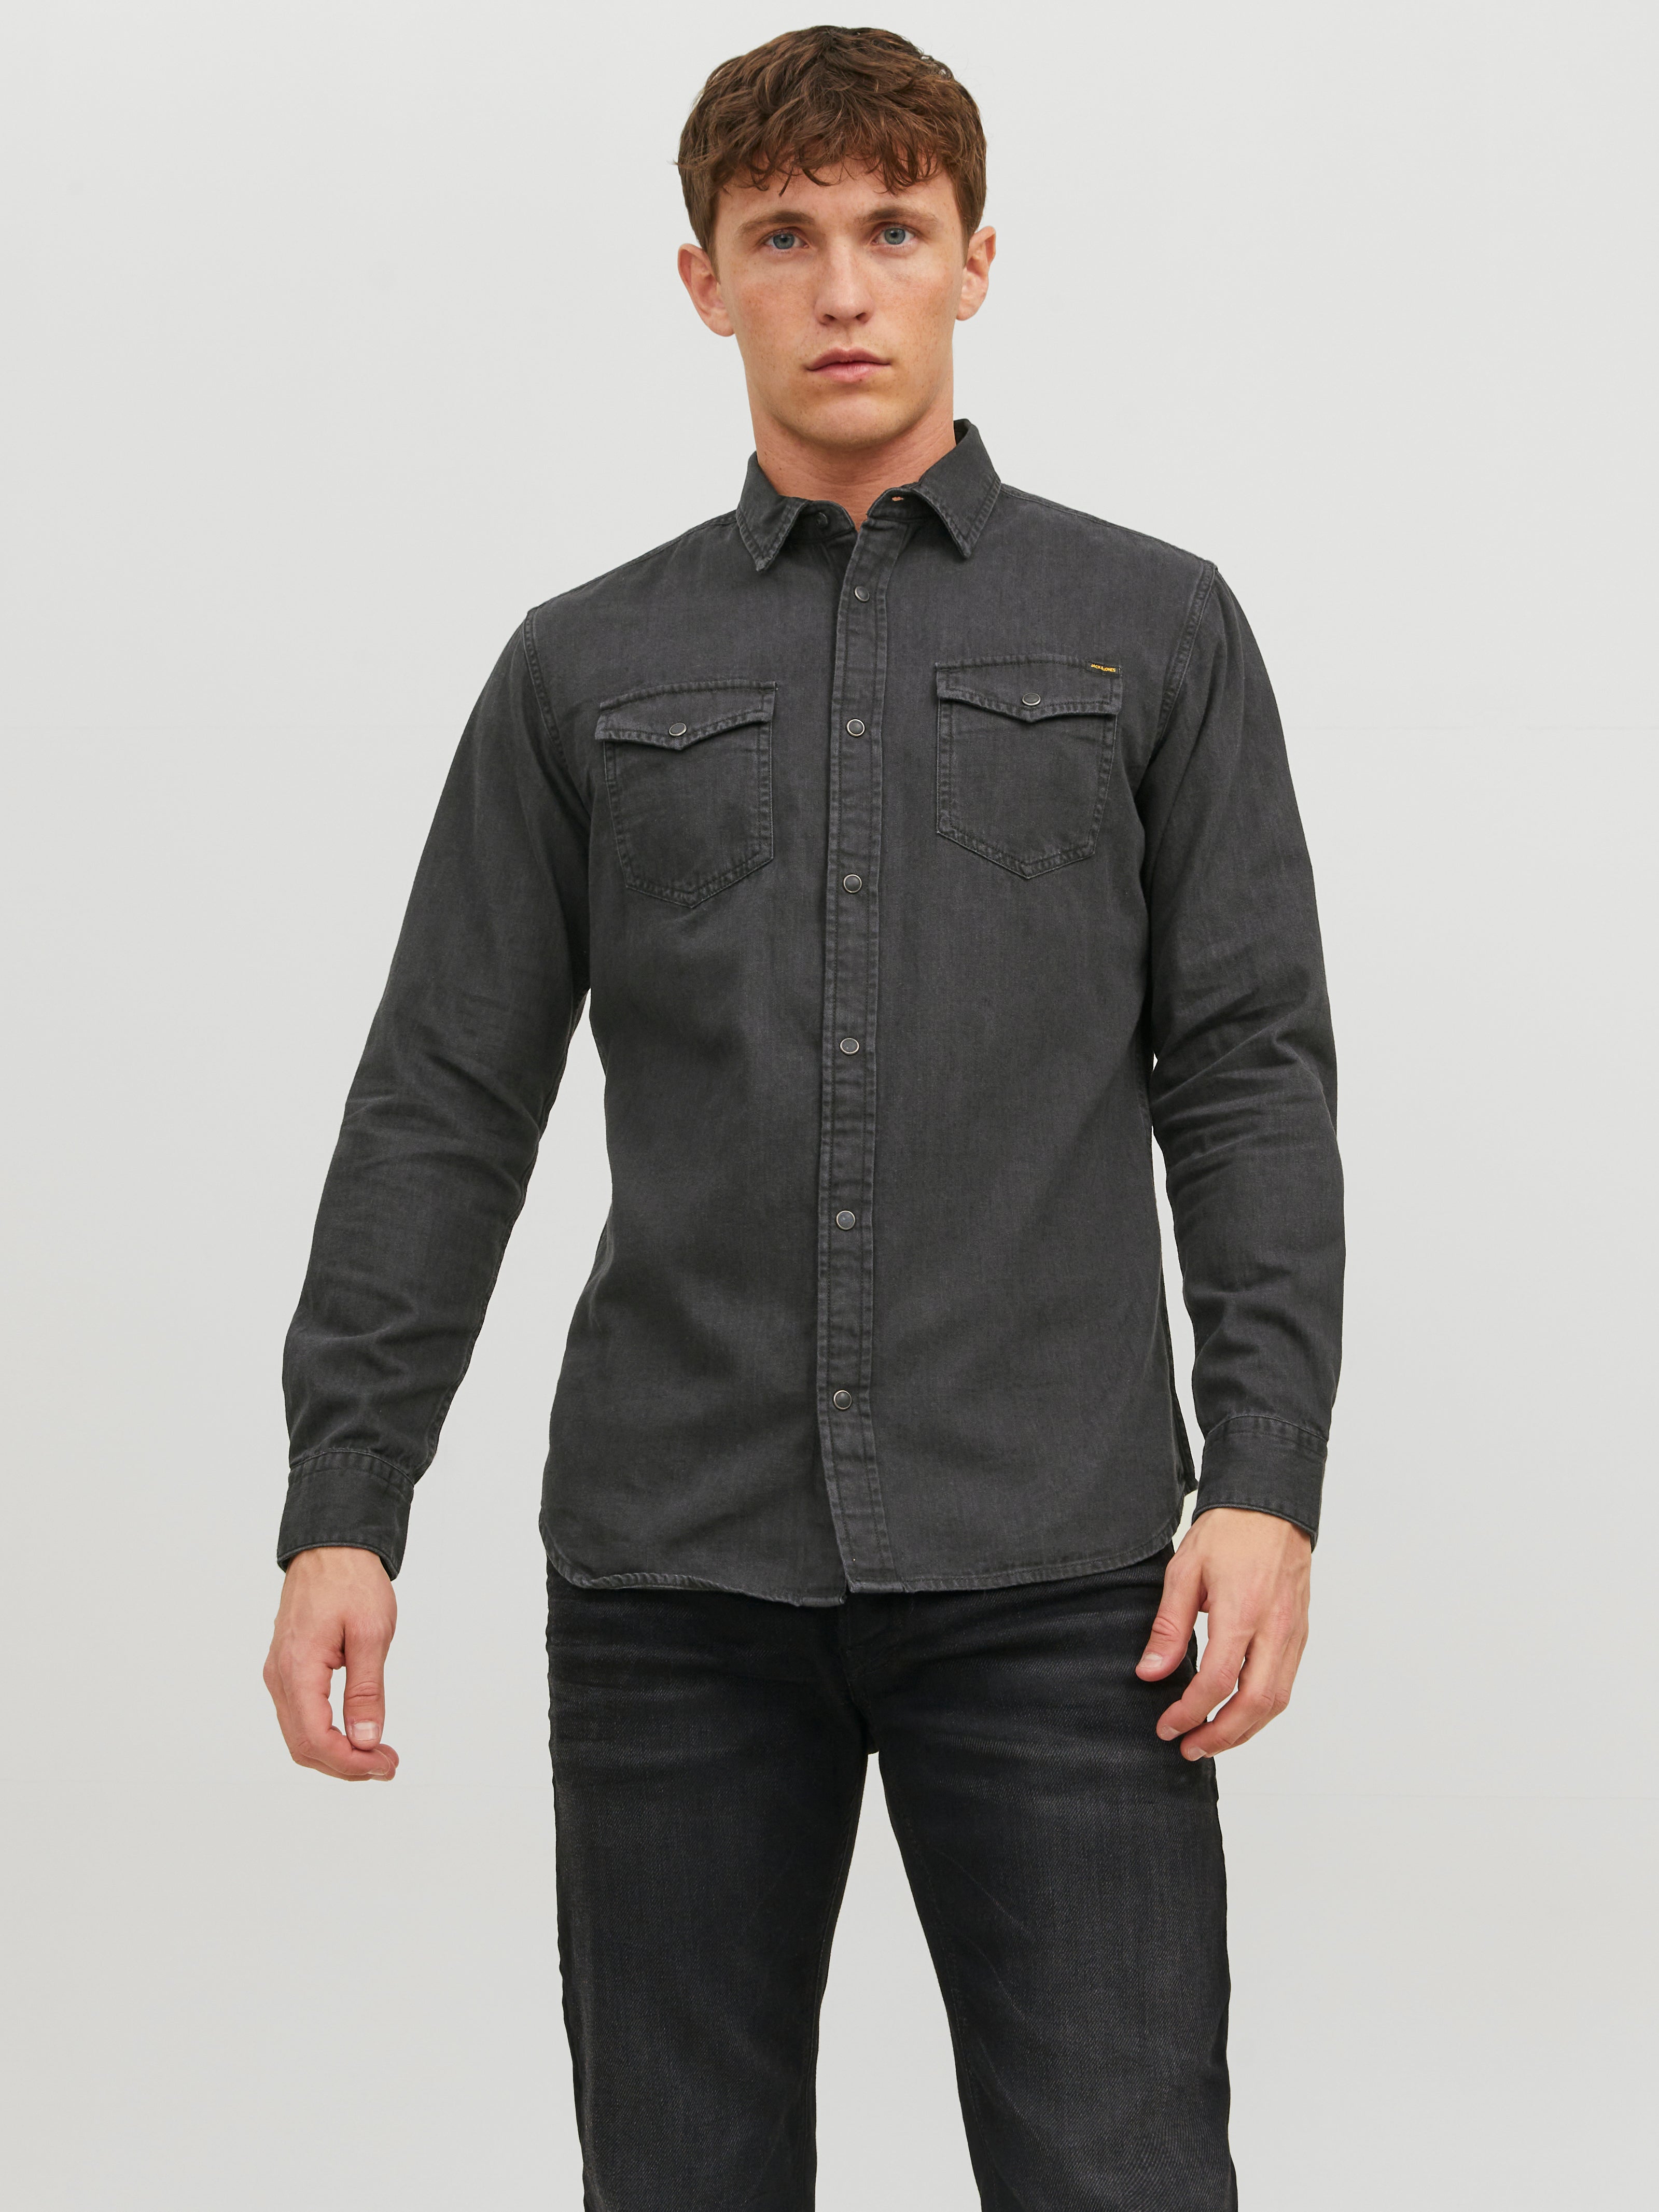 Buy Black Denim Full Sleeves Shirt for Men